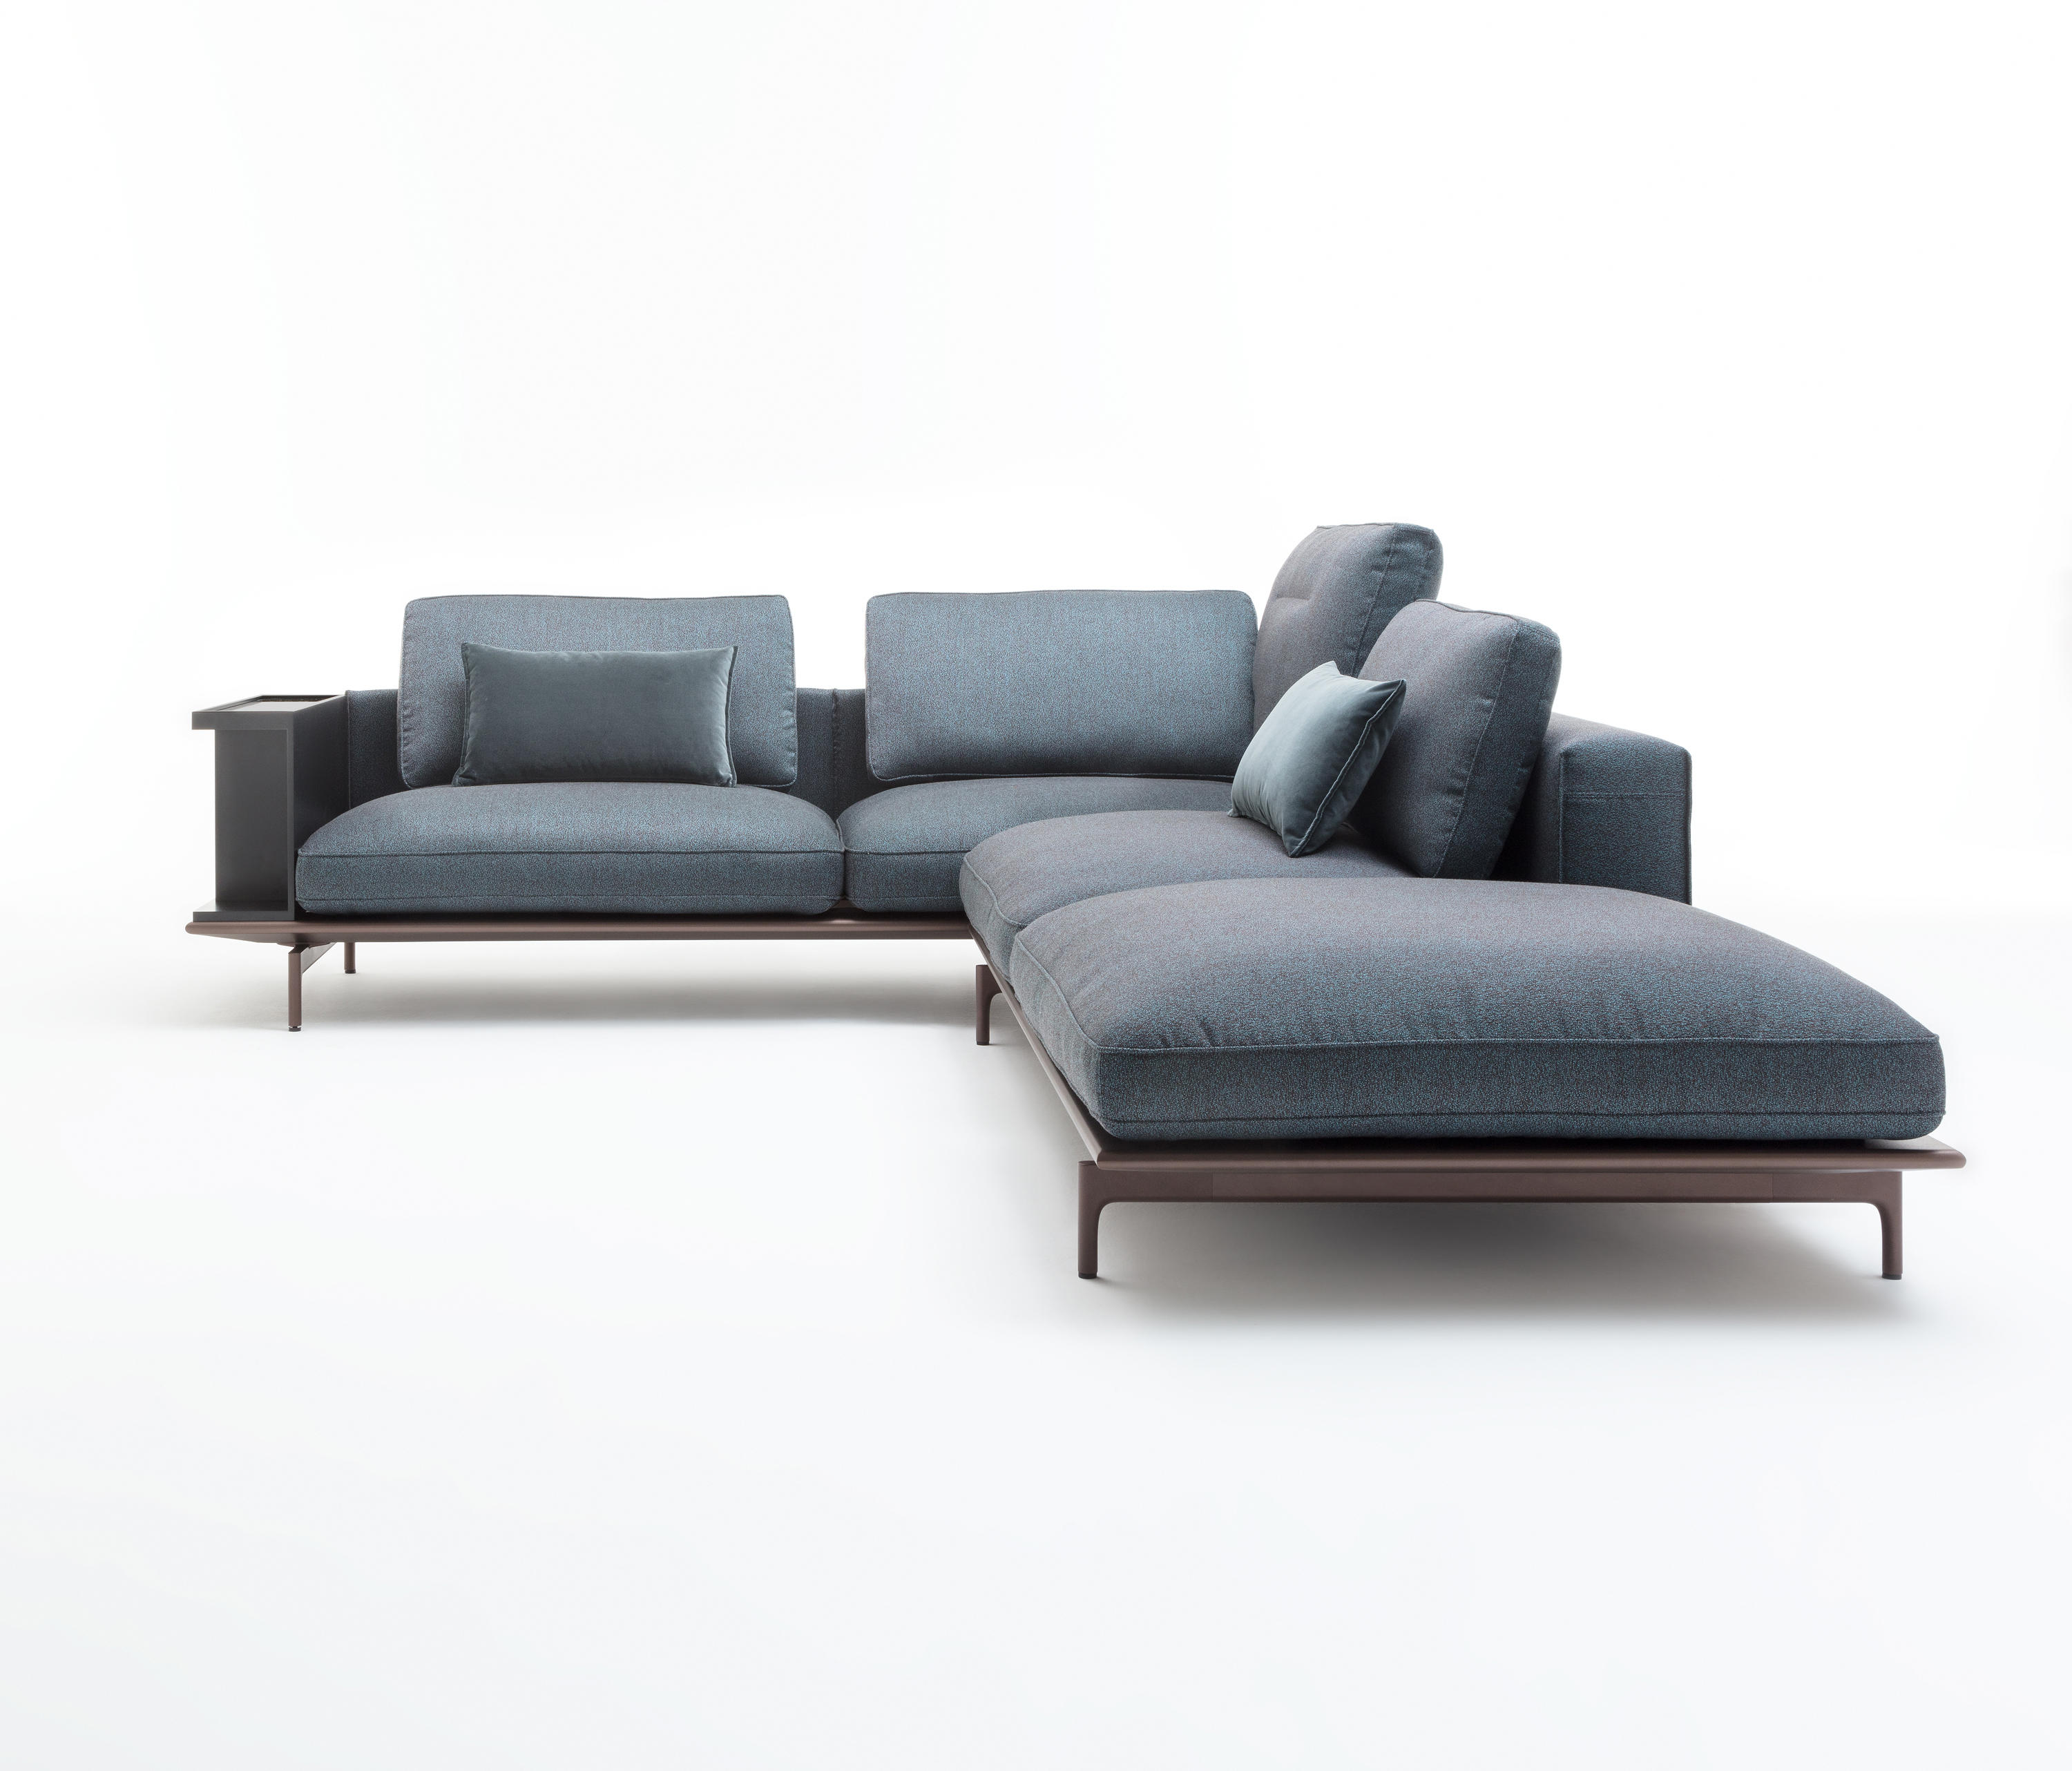 Boodschapper graan herinneringen Rolf Benz 535 LIV & designer furniture | Architonic